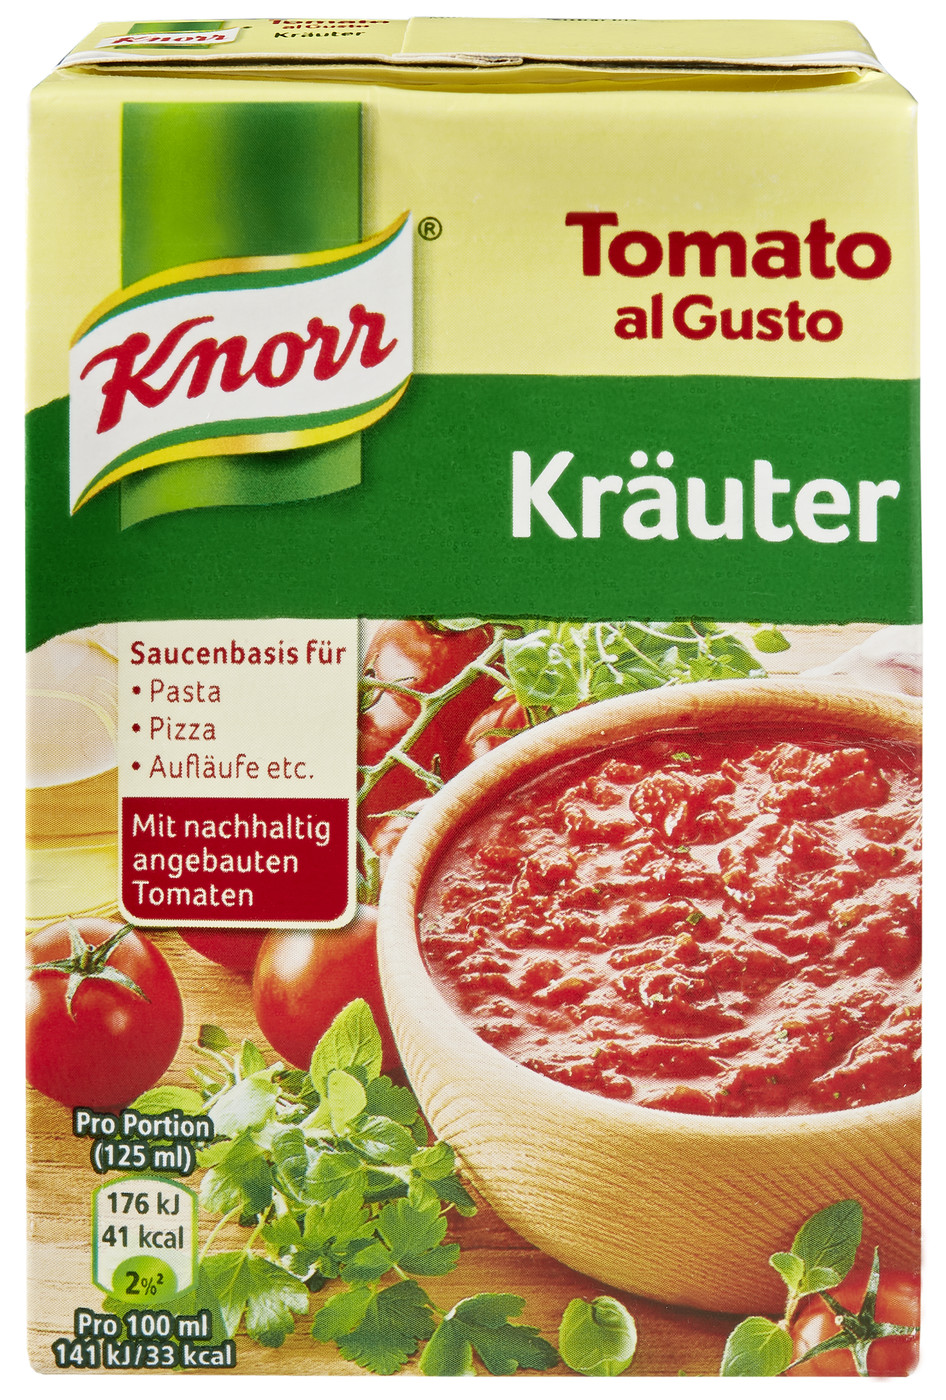 Knorr Tomato al Gusto Kräuter Sauce 370G